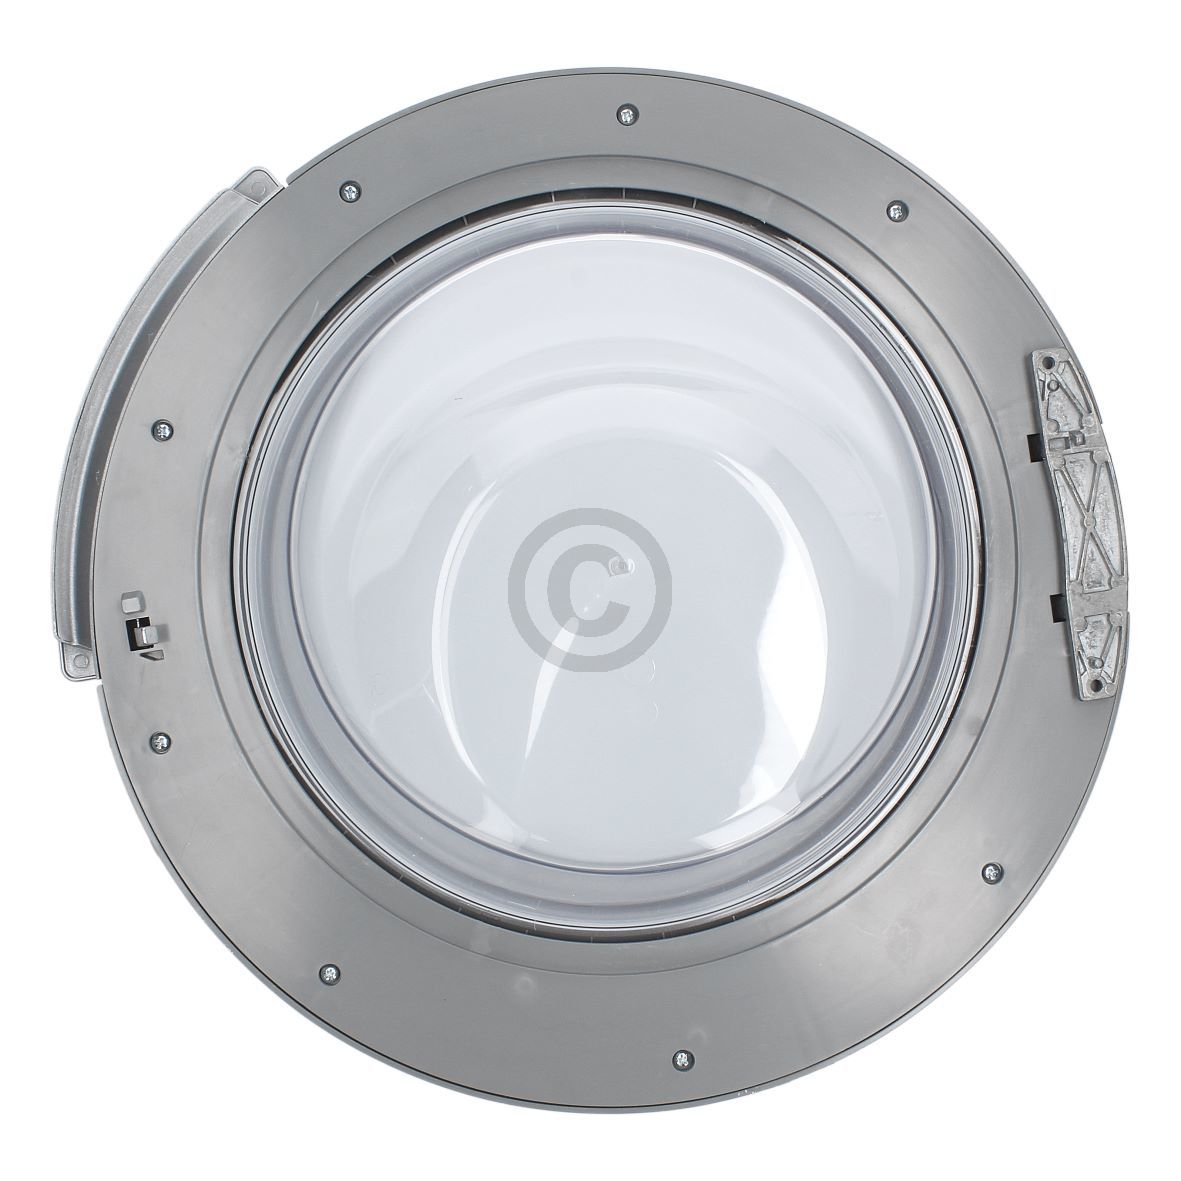 Türe wie SIEMENS 00704287 für Waschmaschine Frontlader